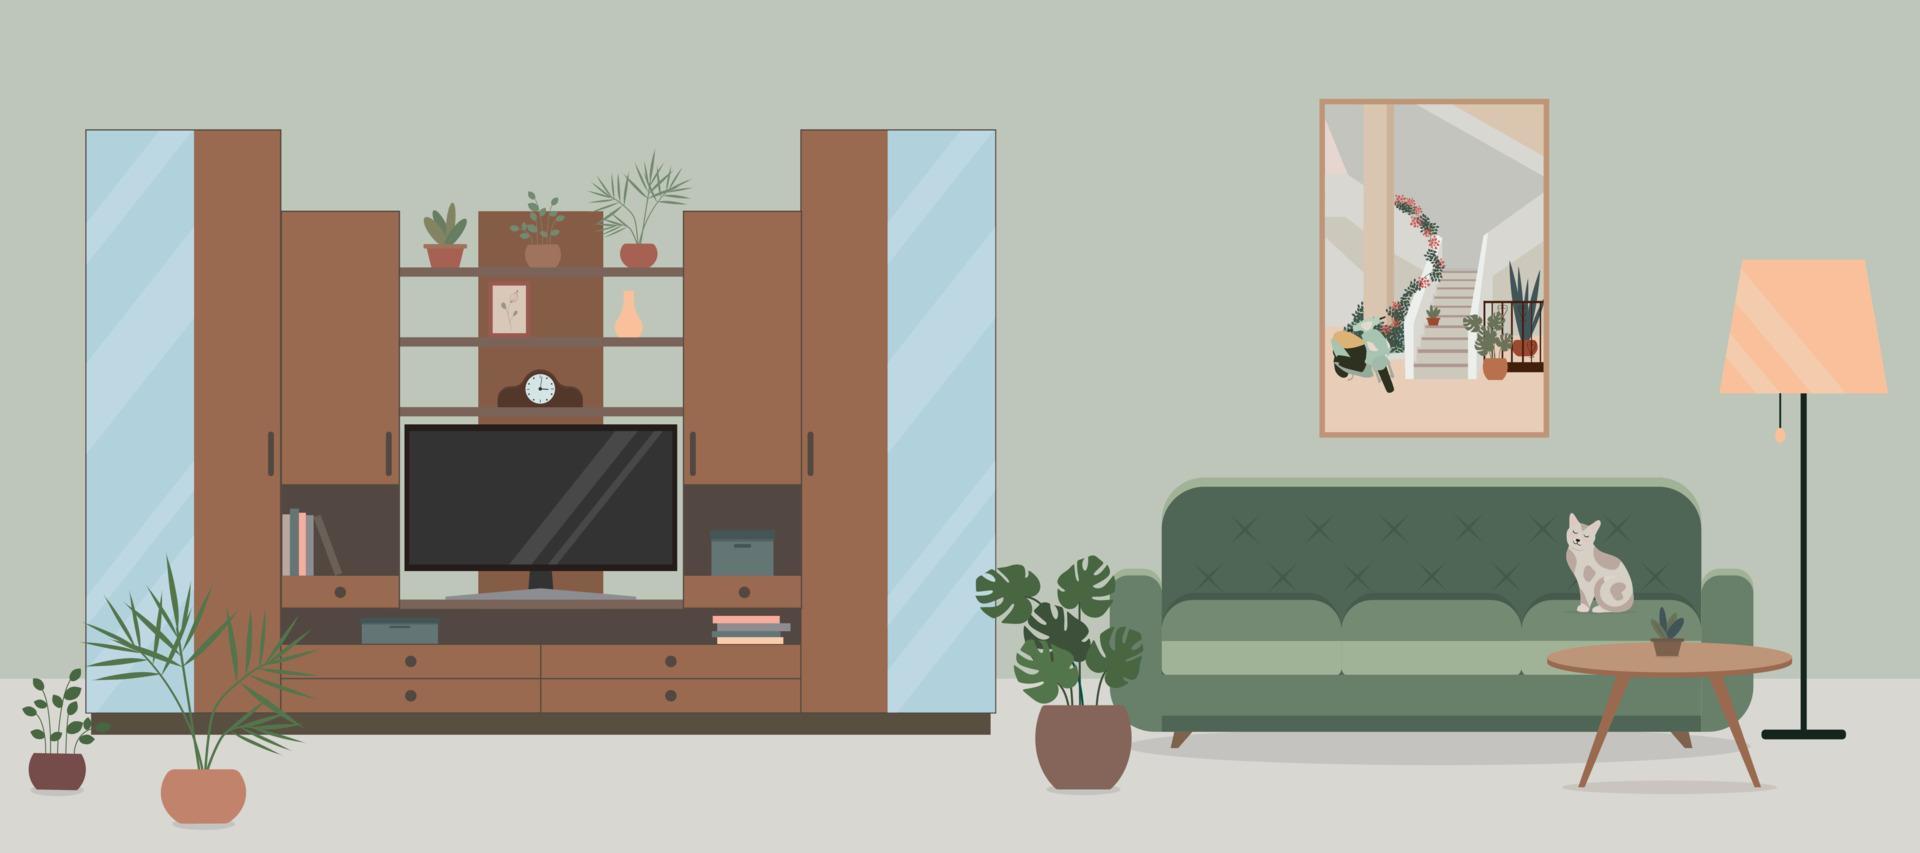 interior aconchegante da sala de estar com armário de tv com prateleiras, tv, sofá, flores em vasos. vetor